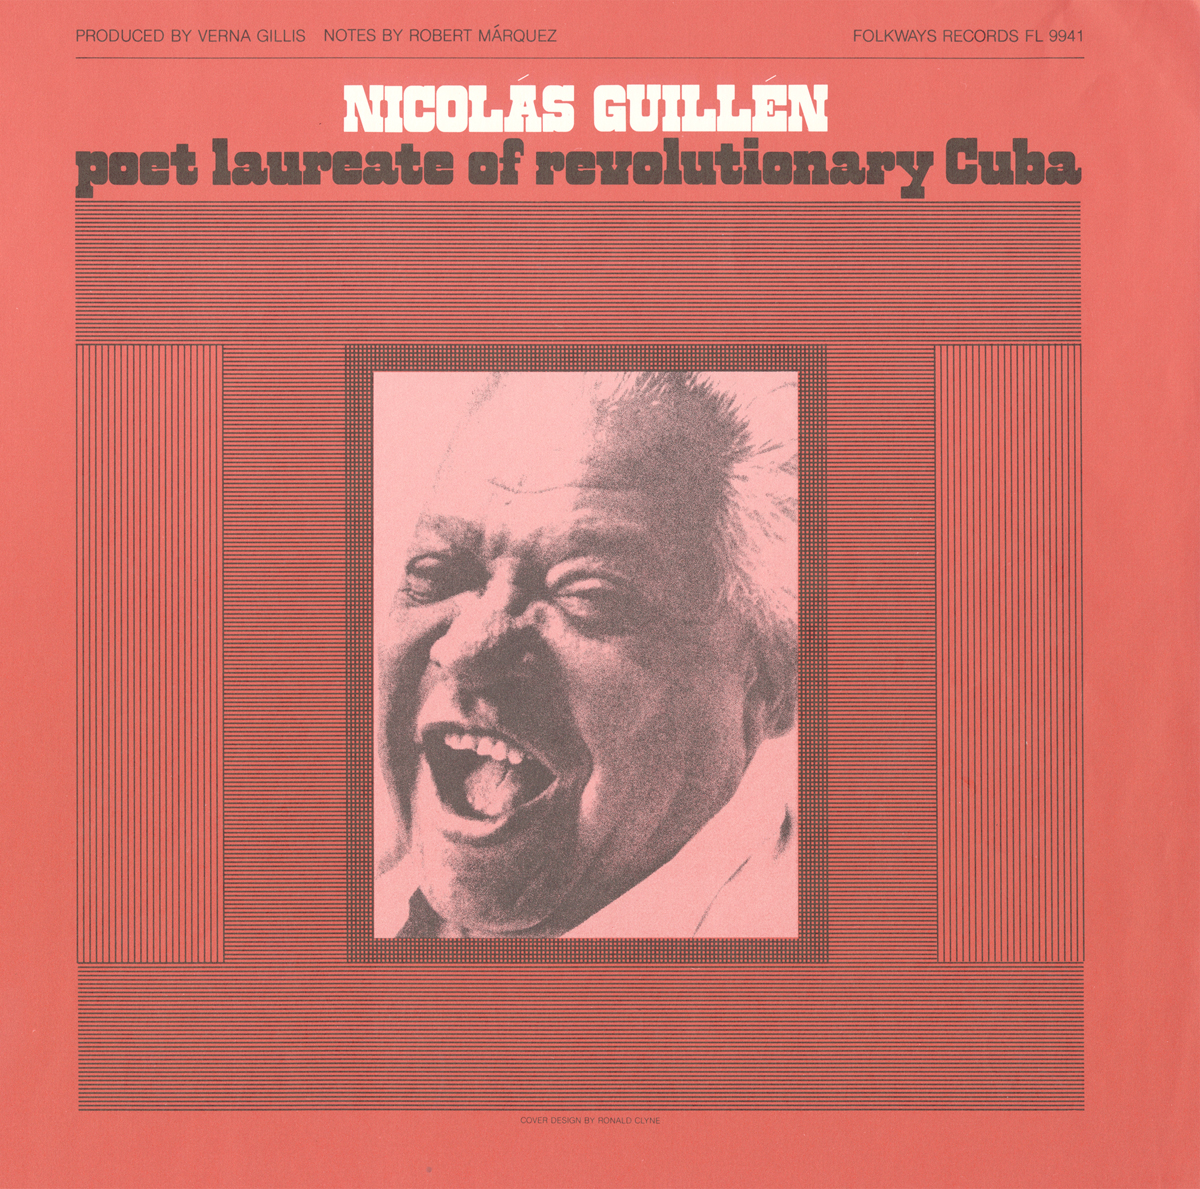 NICOLAS GUILLEN: POET LAUREATE